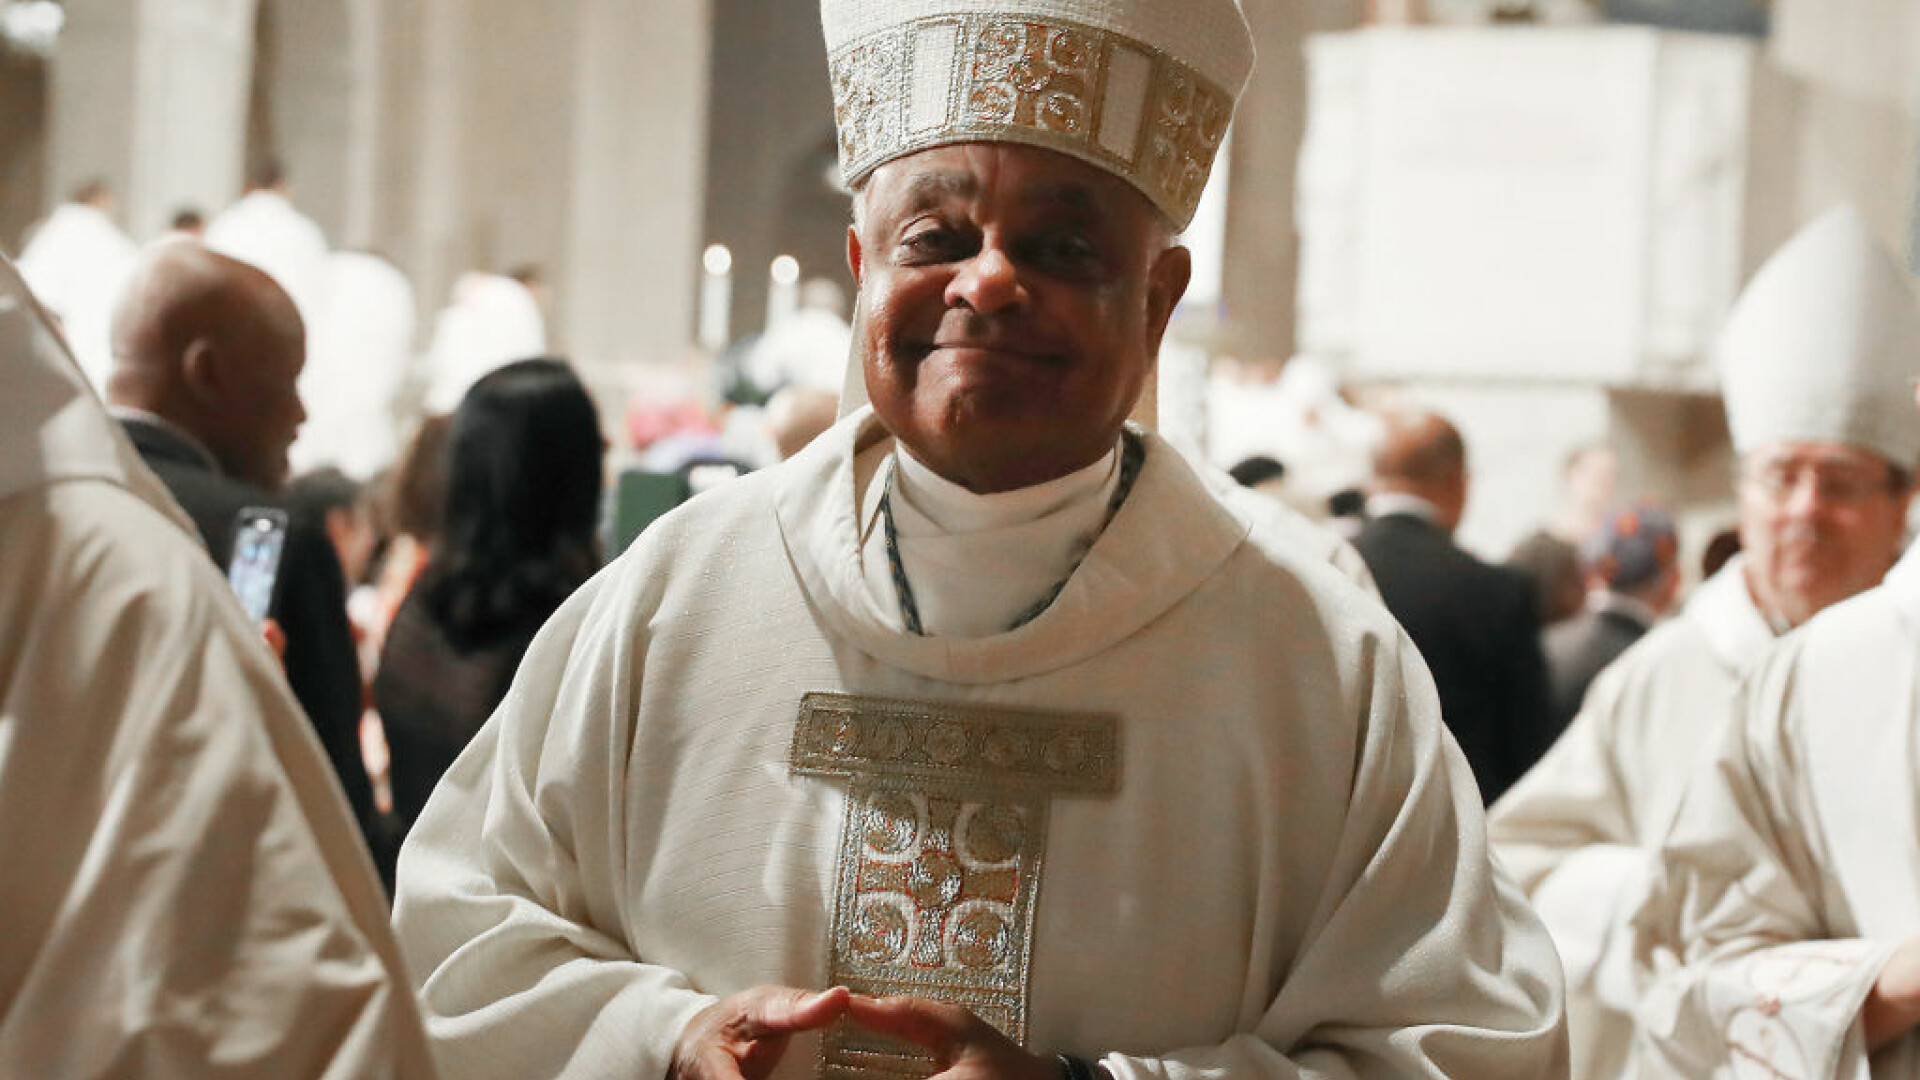 Papa Francisc a numit primul cardinal afro-american. Pentru ce este cunoscut